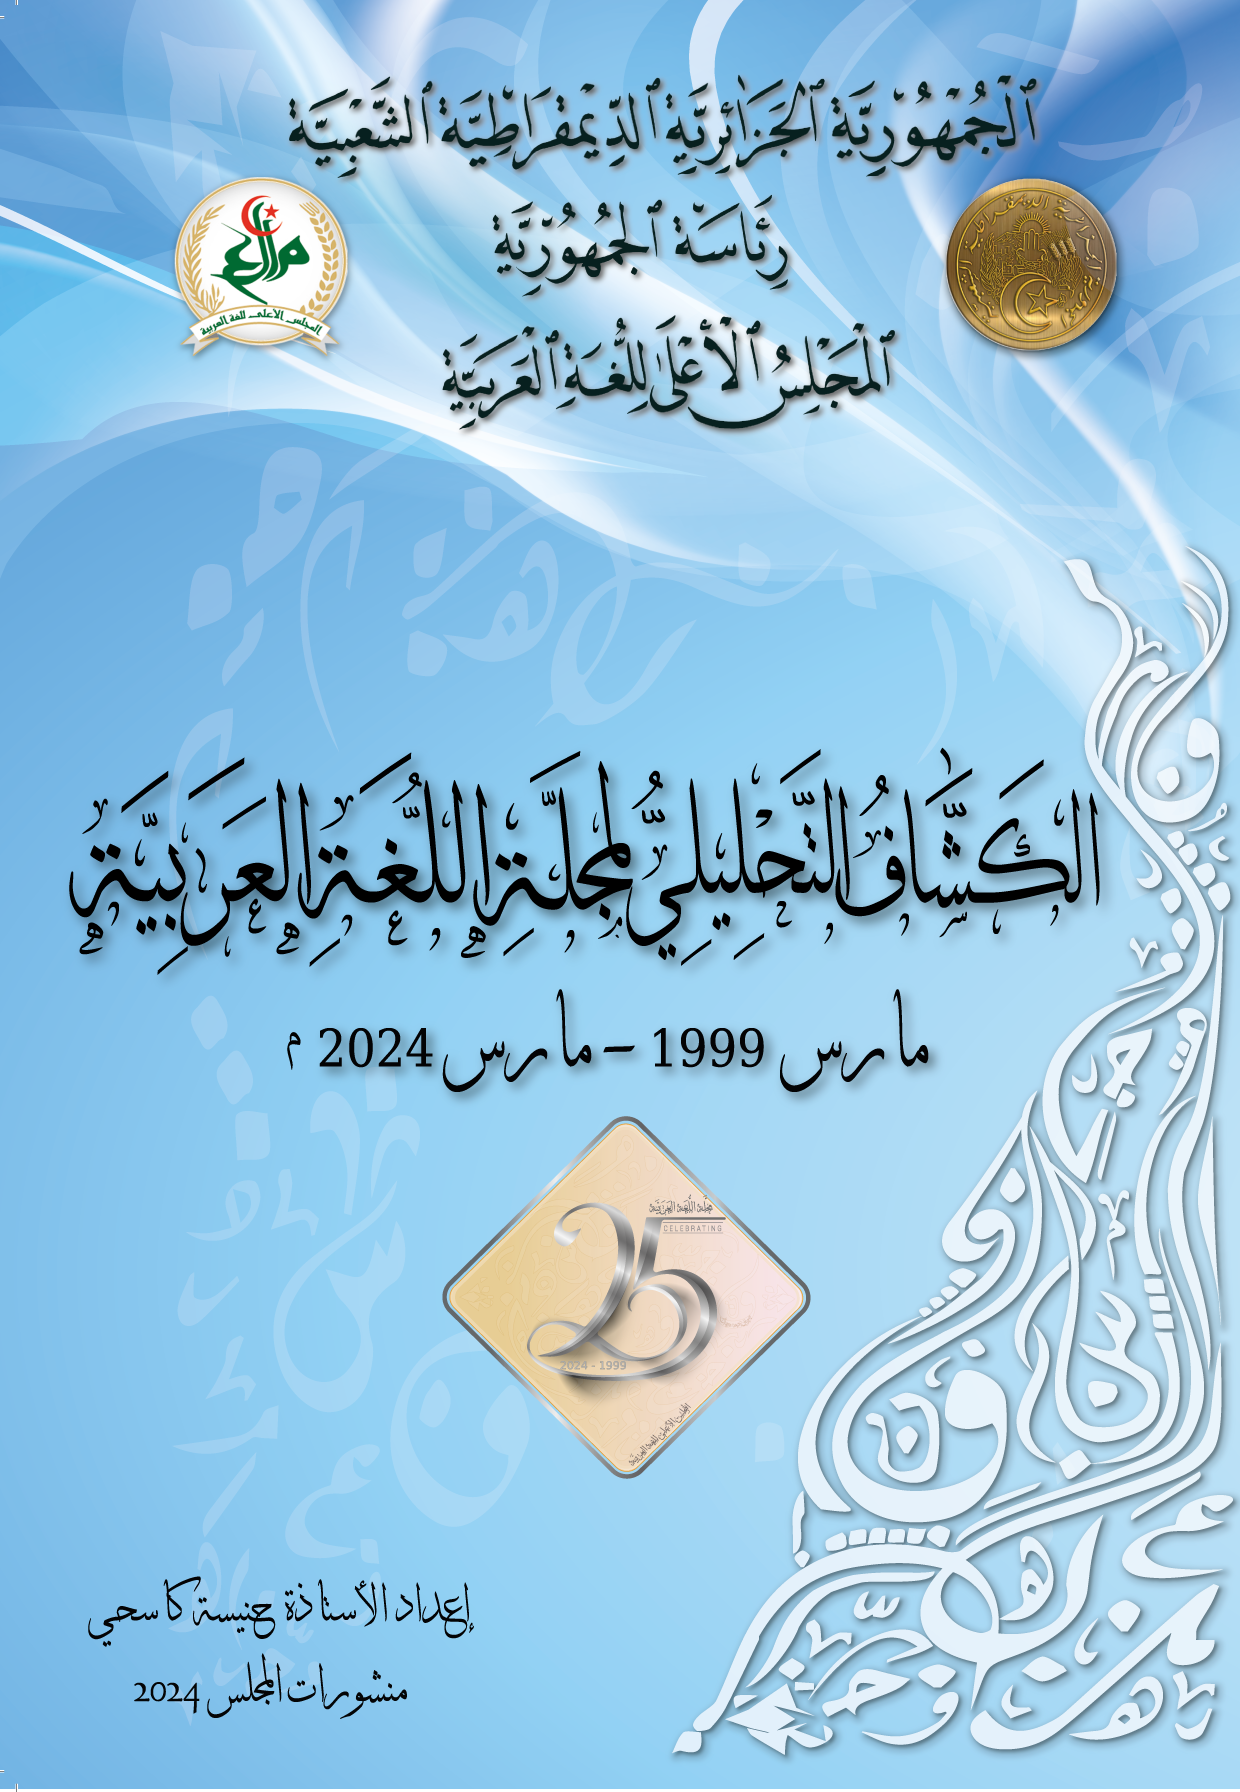 الكشّاف التّحليليّ لمجلّة اللّغة العربيّة مارس 1999 - مارس 2024م